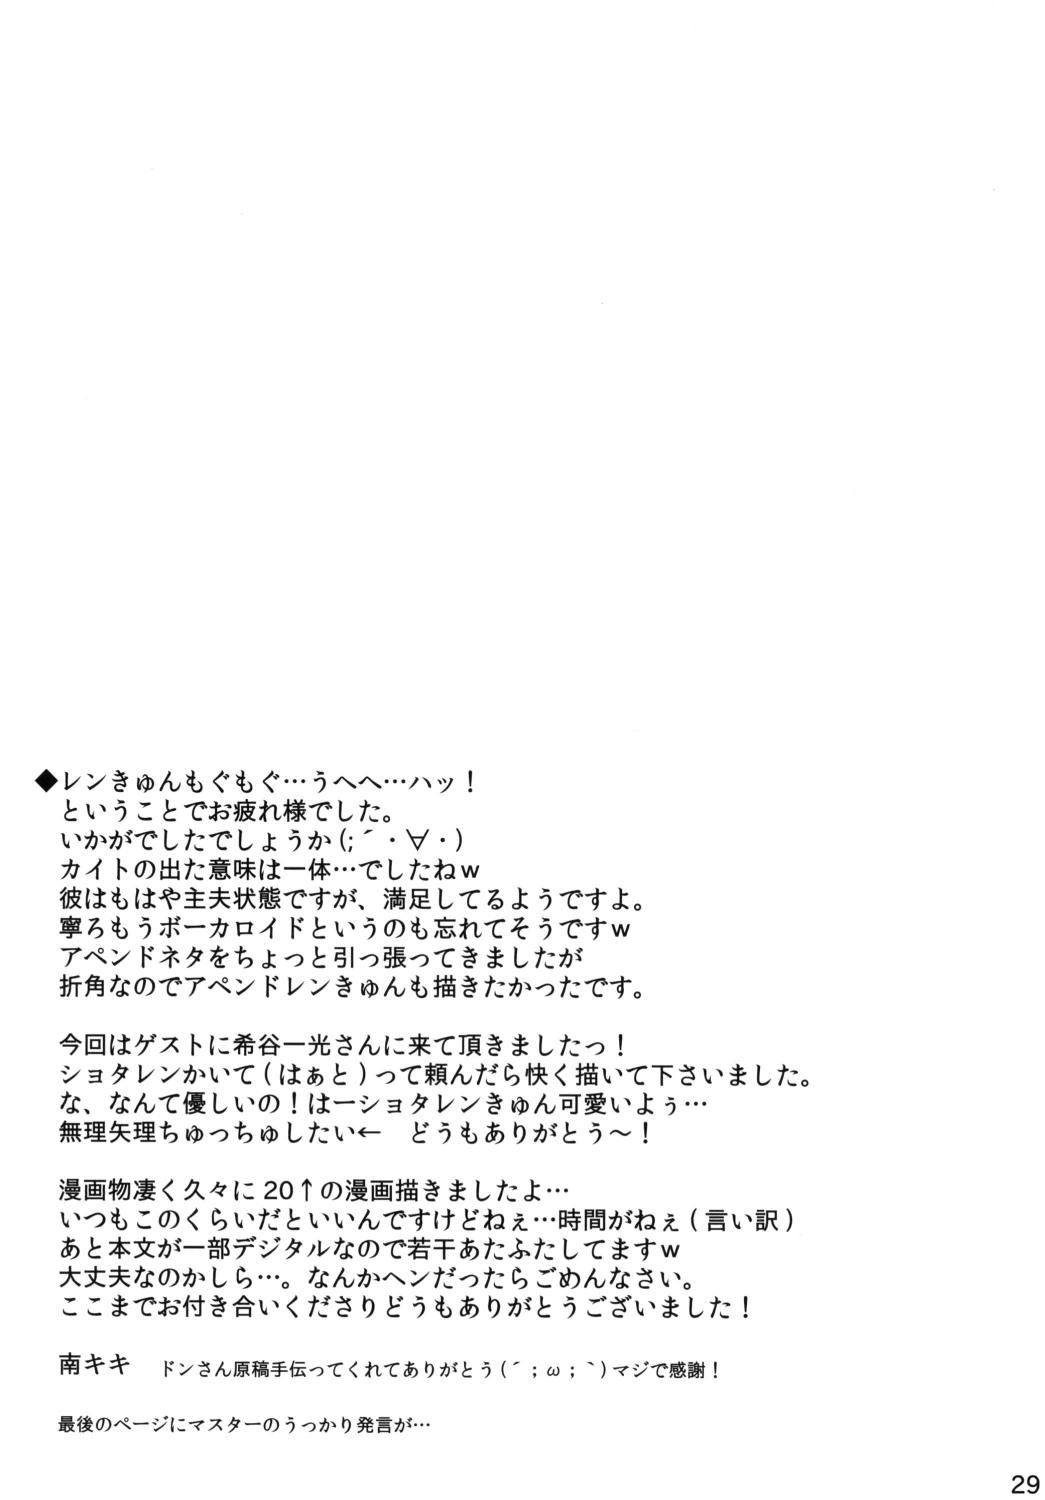 Mms Koi Len - Vocaloid Jerk Off Instruction - Page 28